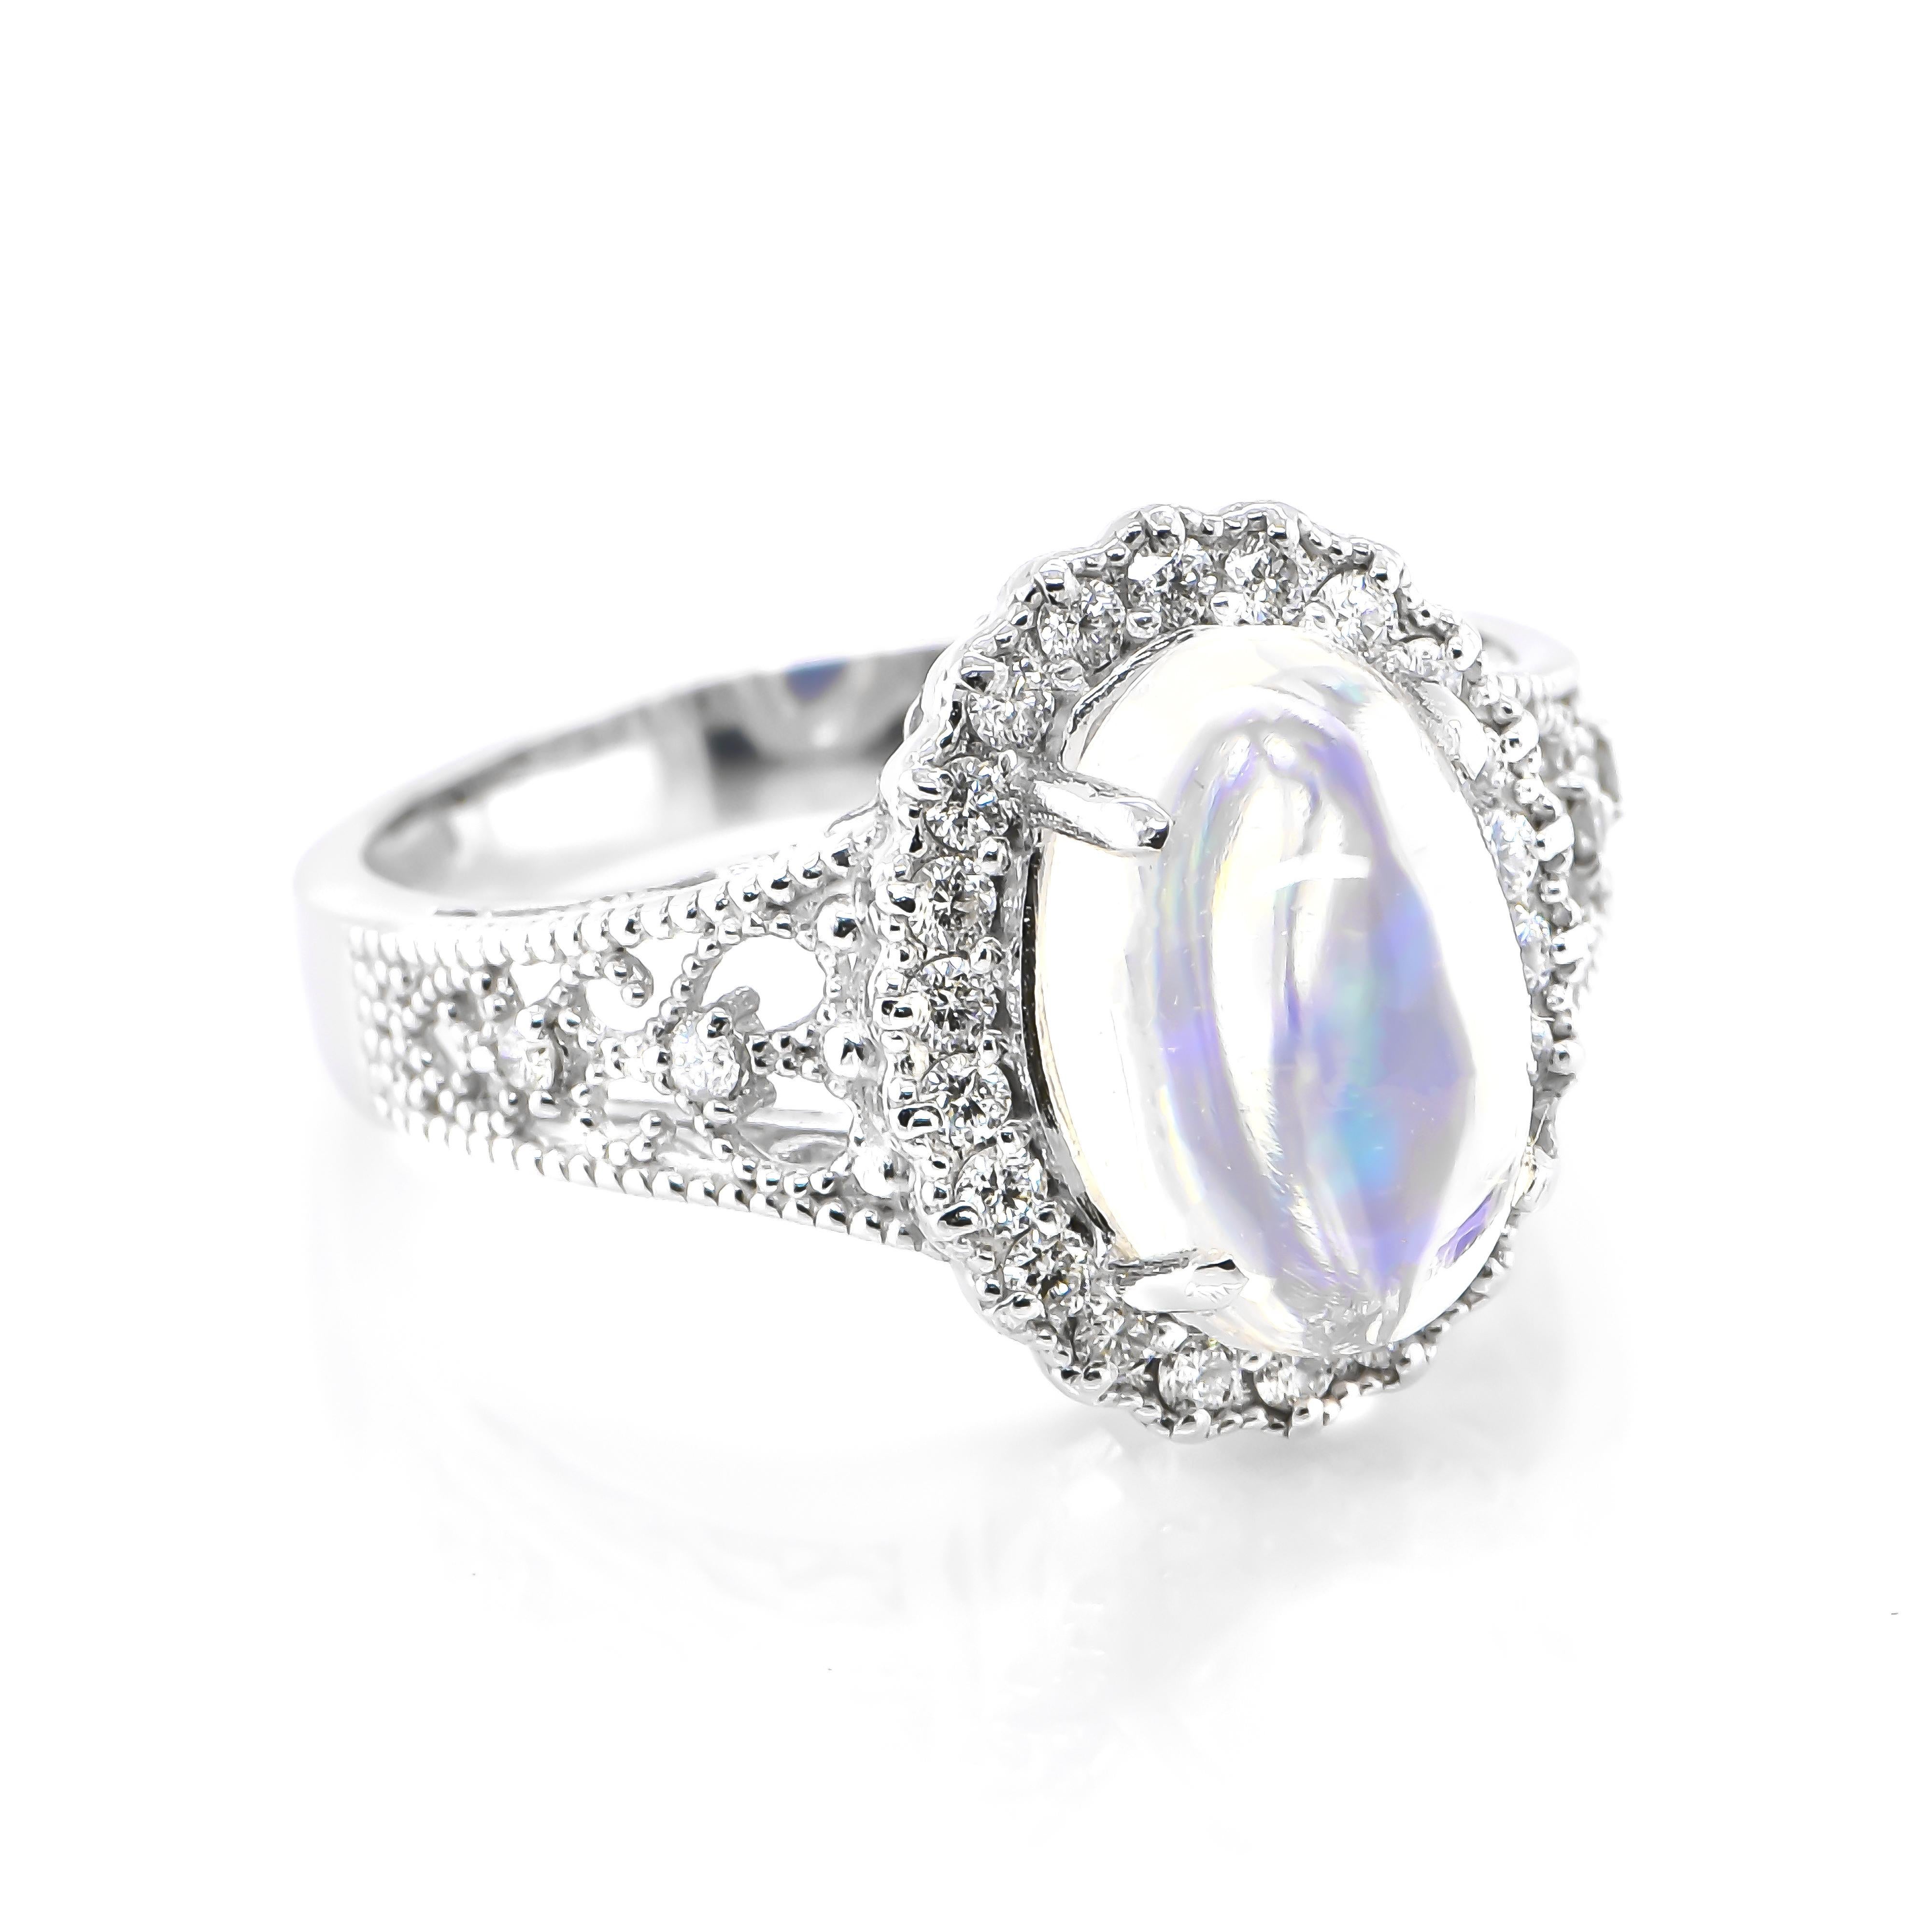 Ein wunderschöner Ring mit einem natürlichen Wasseropal von 2,83 Karat und 0,29 Karat Diamanten in Platin gefasst. Opale sind dafür bekannt, dass sie blitzende Regenbogenfarben zeigen, die als 